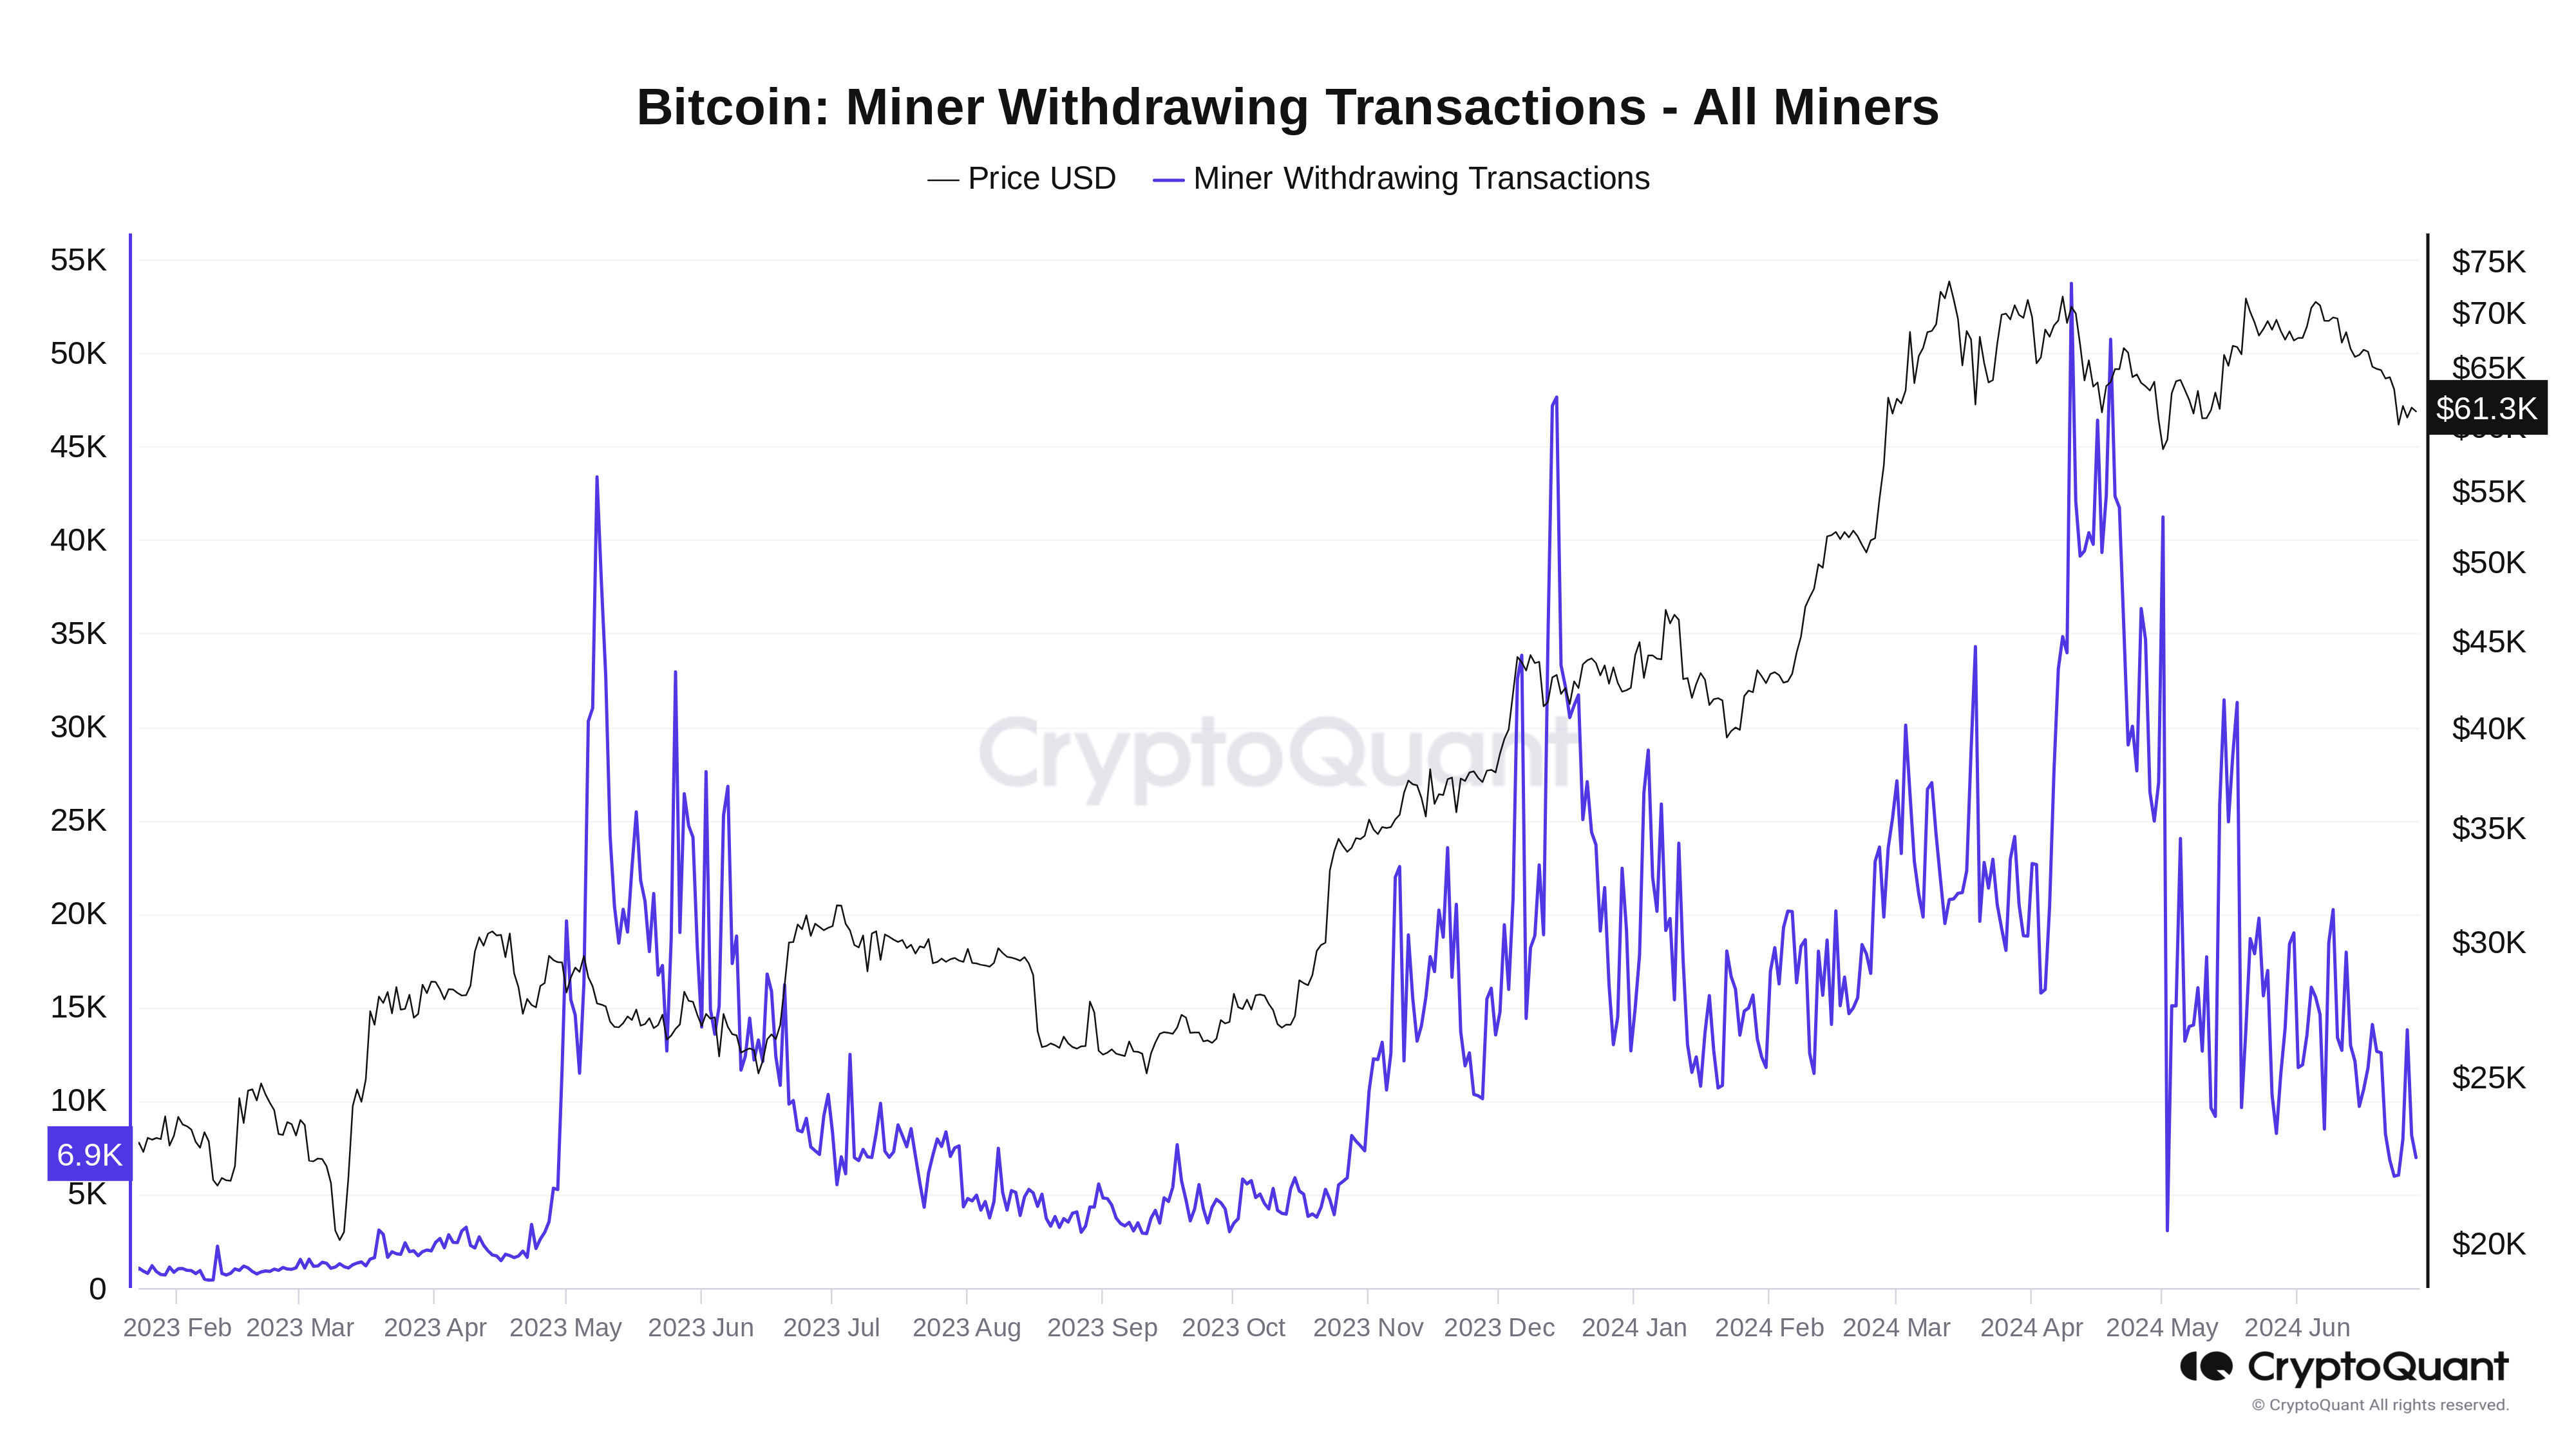 Áp lực bán của các Miner Bitcoin 'đang giảm' khi rút tiền BTC giảm 85%